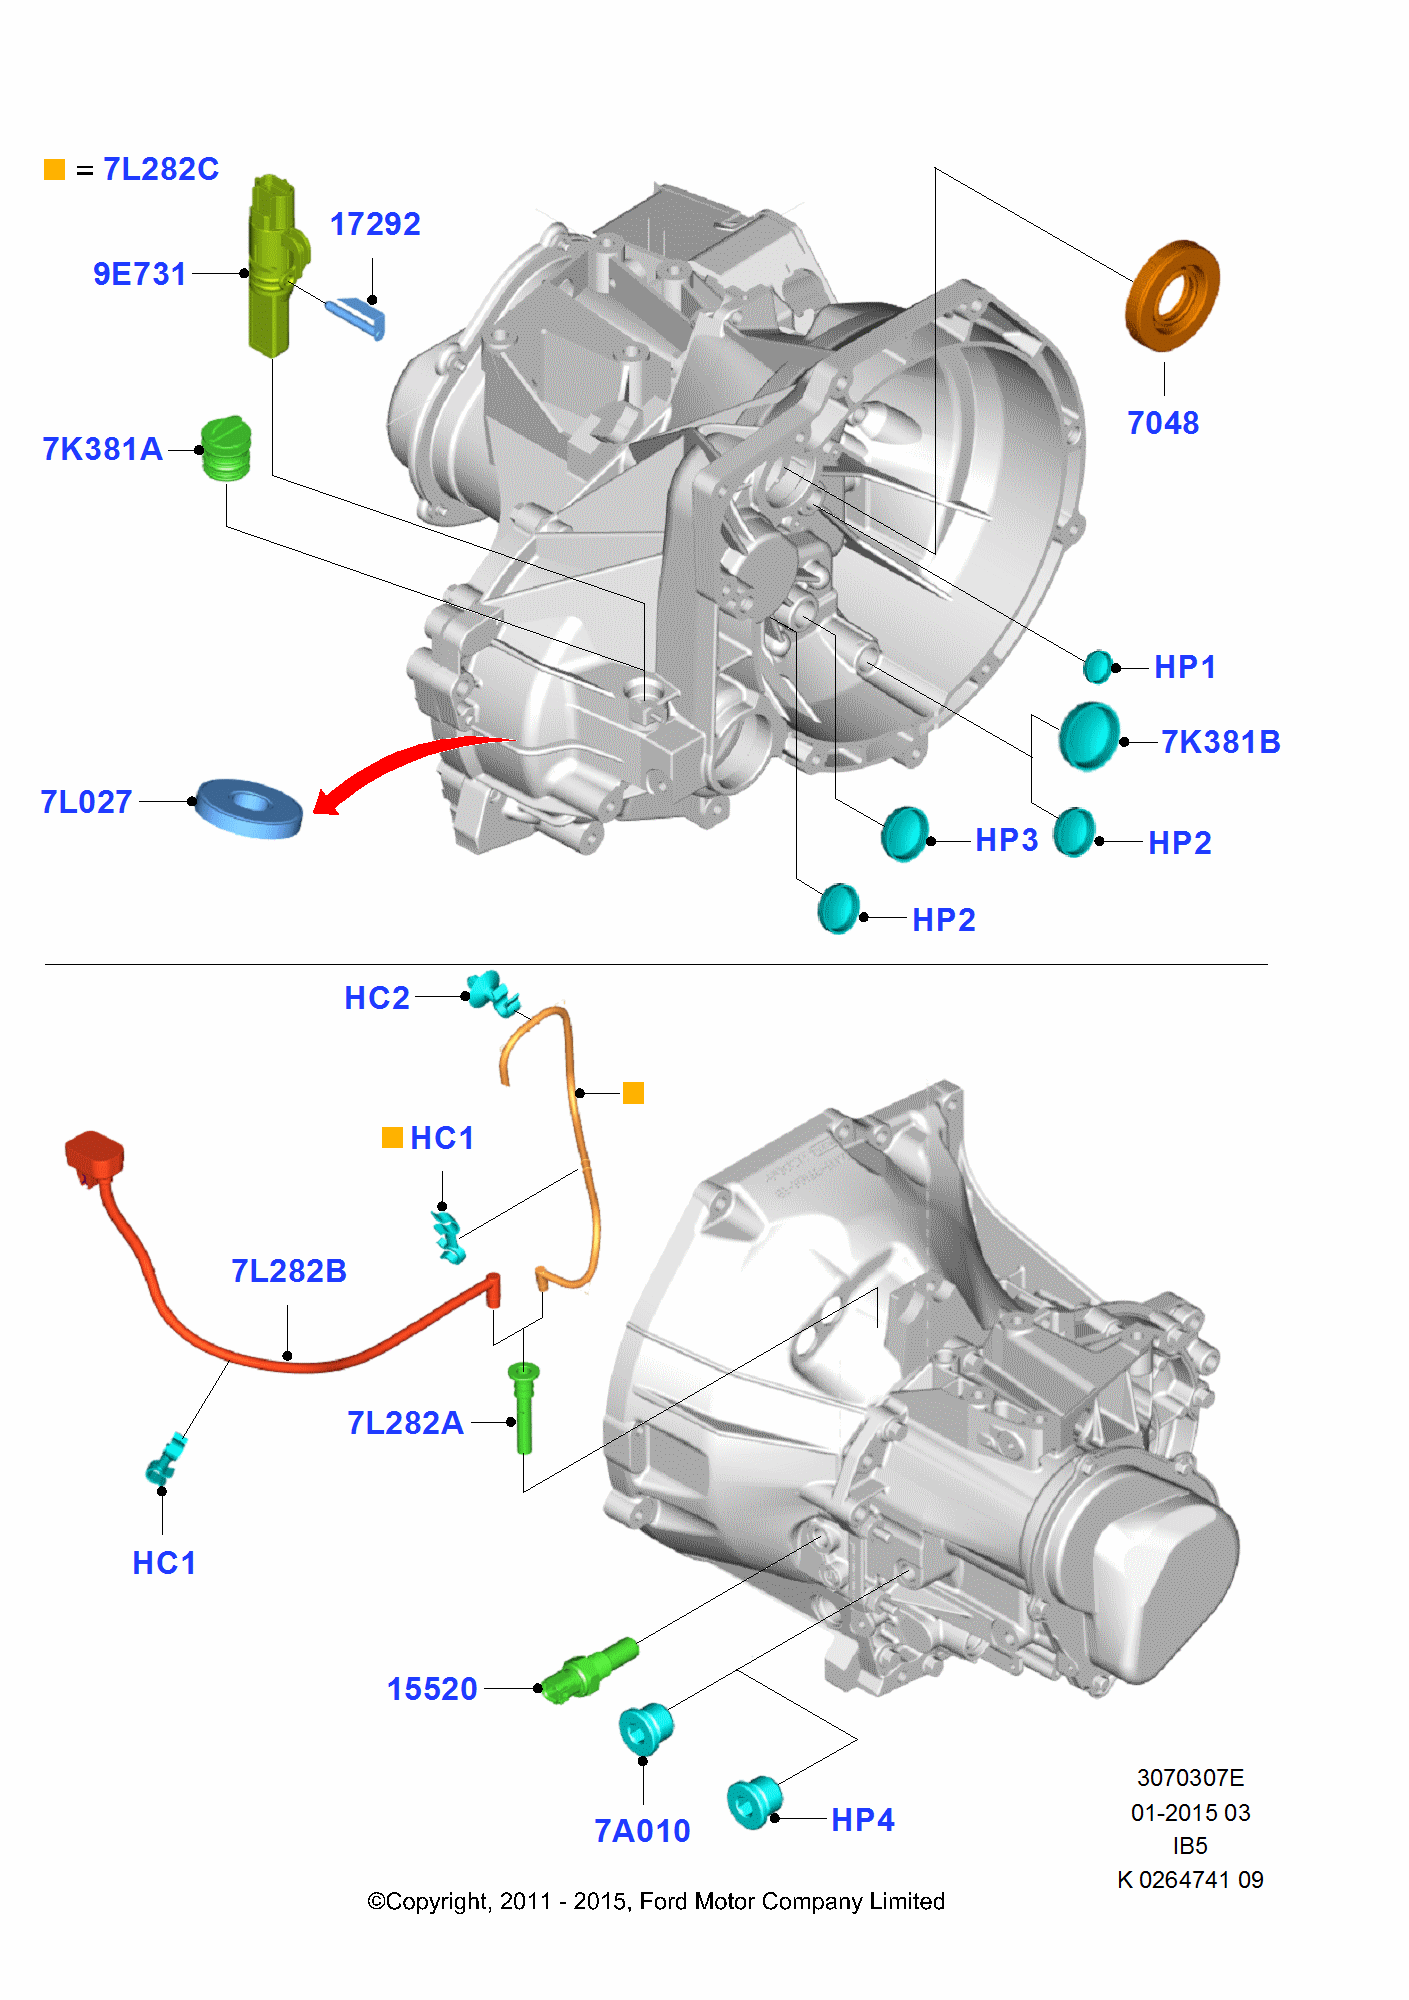 Manual Transmission External Cmpnts för Ford Fiesta Fiesta 2008-2012        (CB1)